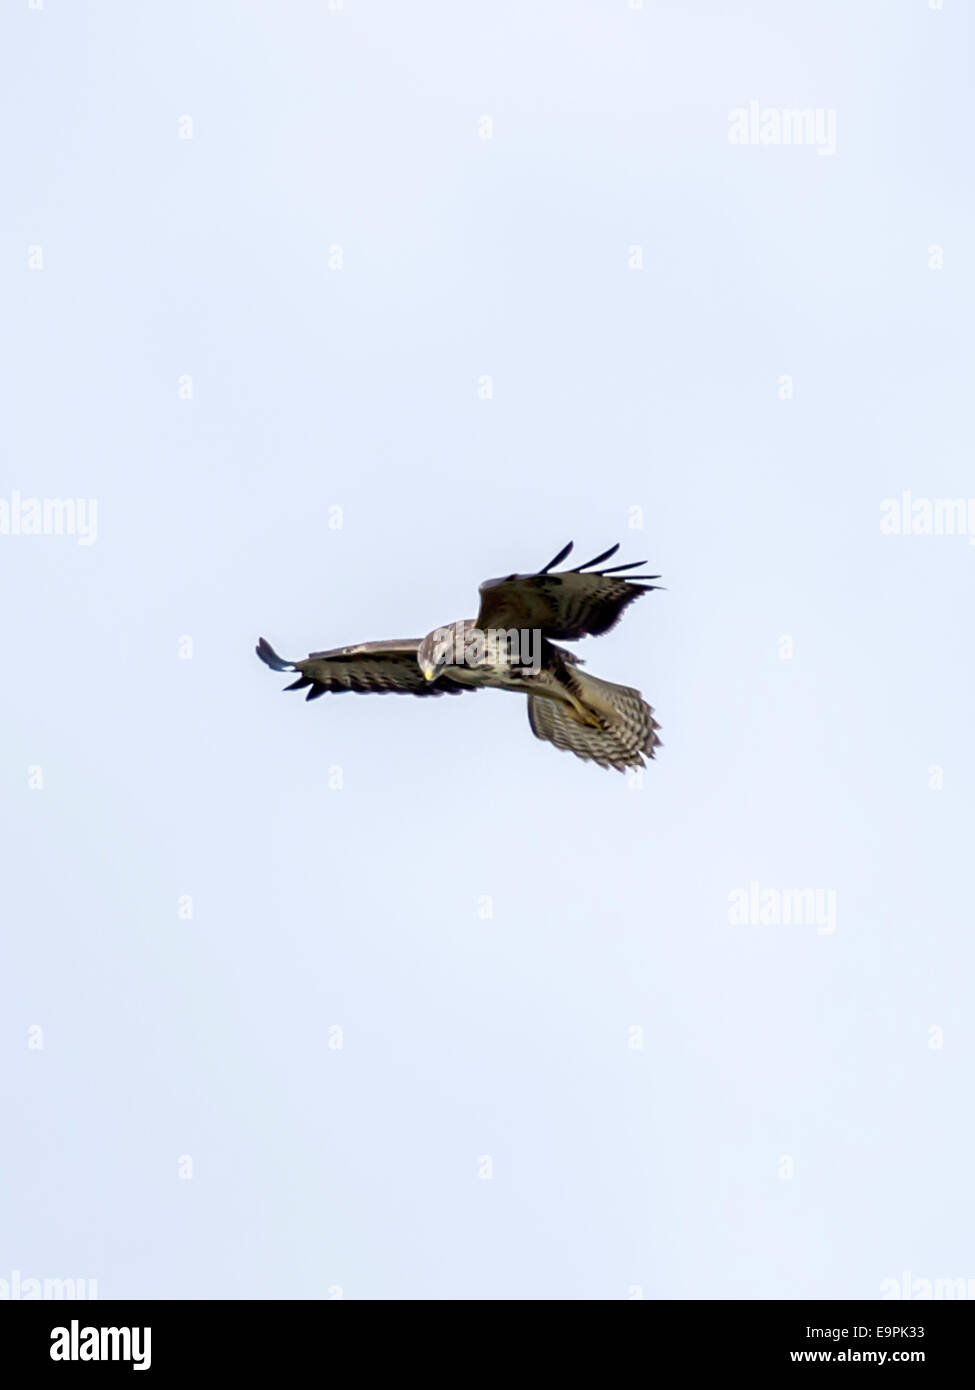 Single European Albanella reale [Circus cyaneus] in volo hovering, caccia fauna selvatica, isolato con cielo blu sullo sfondo. Foto Stock